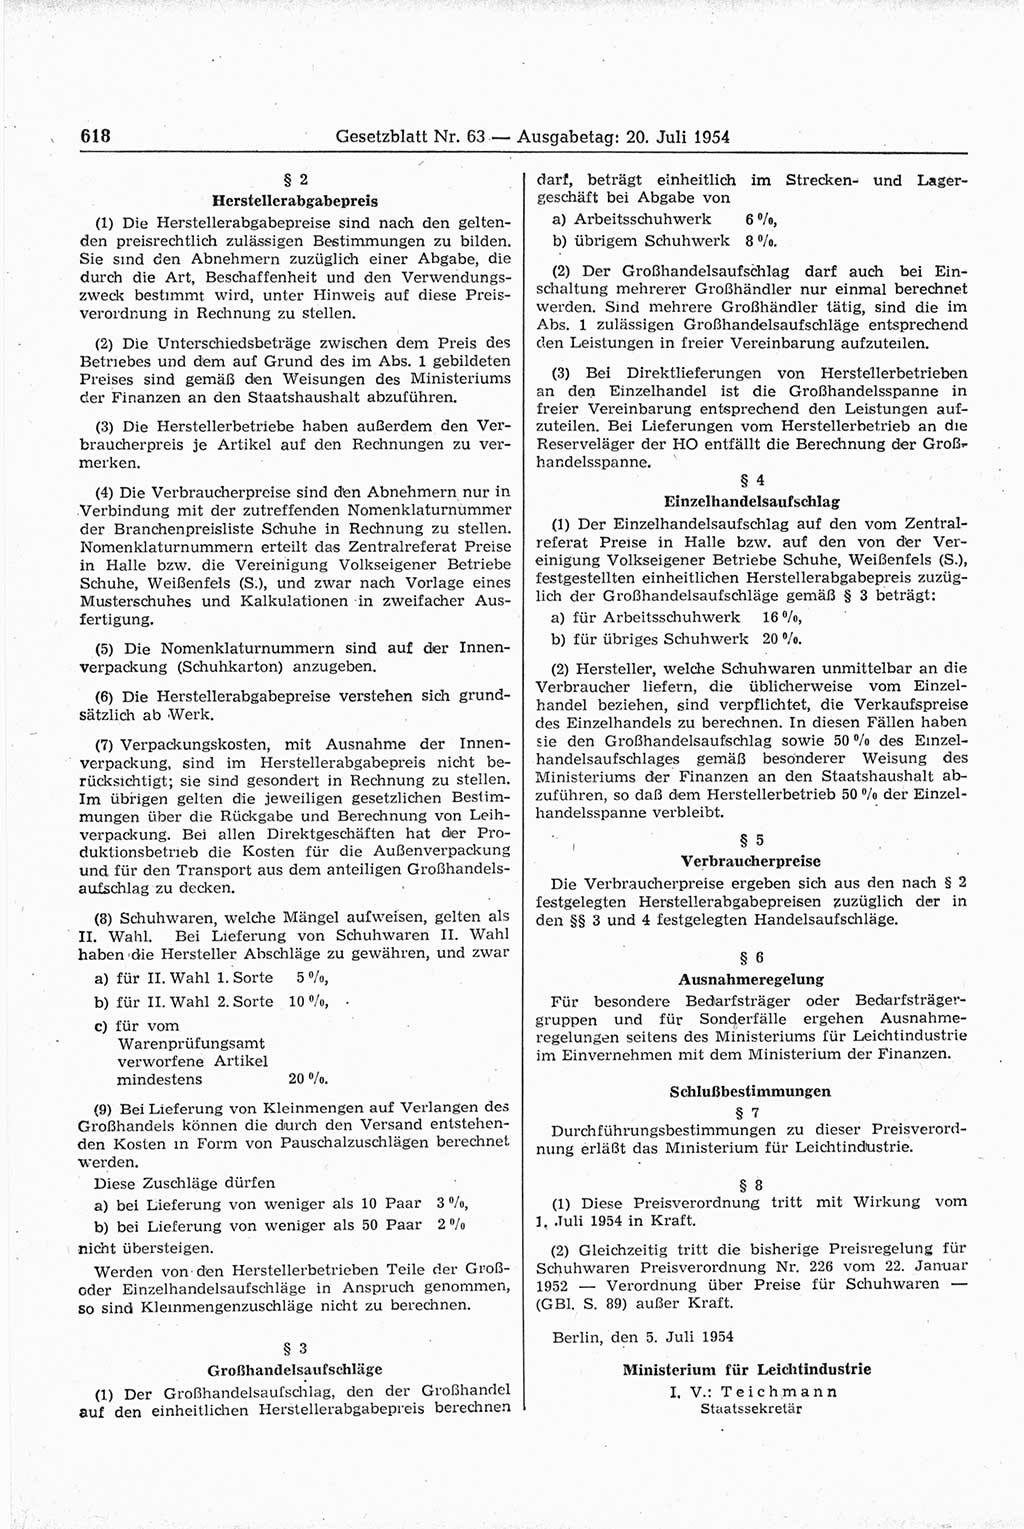 Gesetzblatt (GBl.) der Deutschen Demokratischen Republik (DDR) 1954, Seite 618 (GBl. DDR 1954, S. 618)